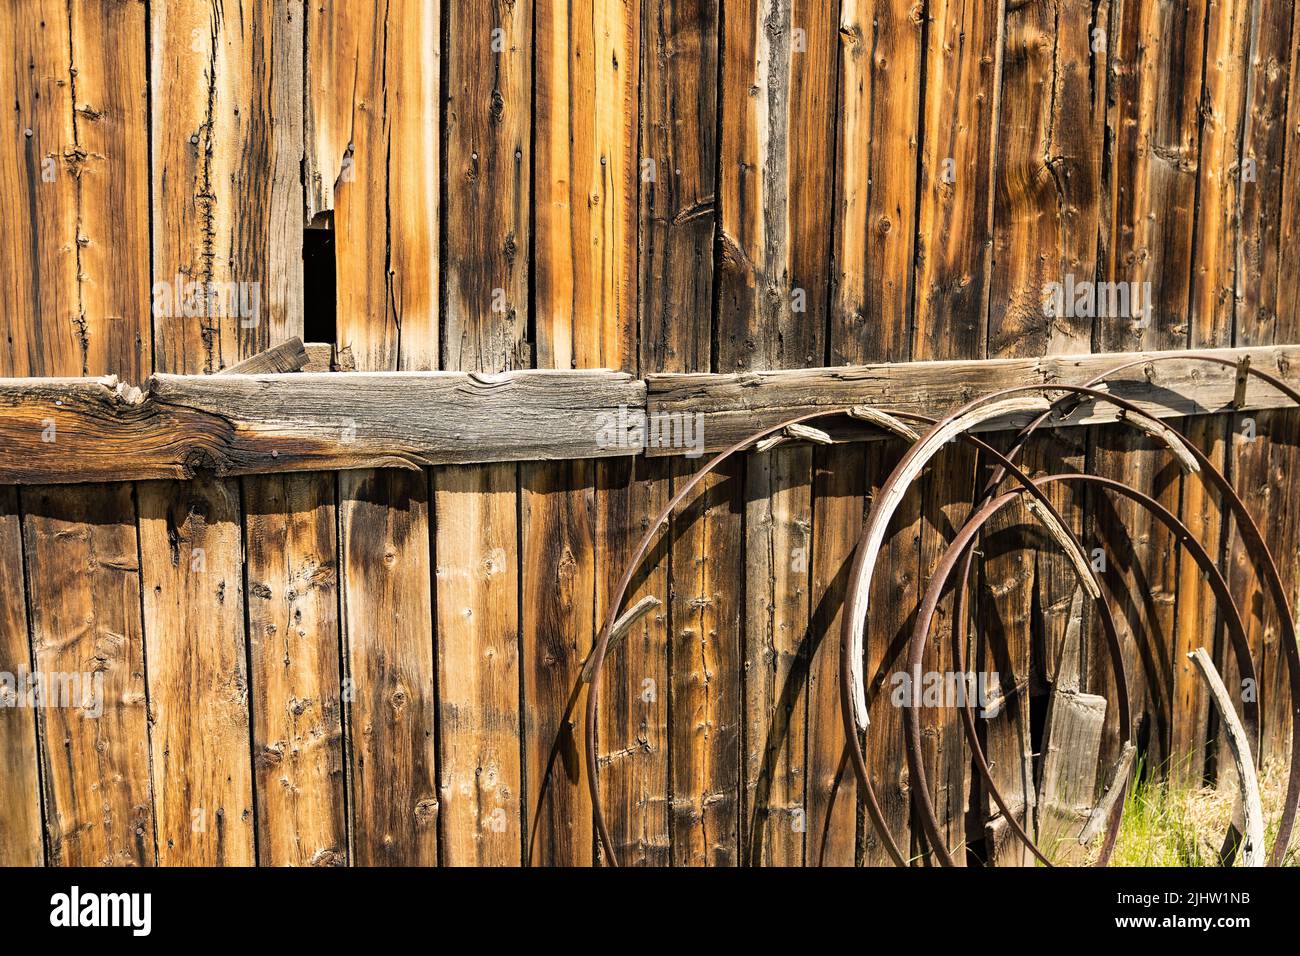 Sfondo di vecchie ruote di carro arrugginite contro un muro di fienile in legno intemperato Foto Stock